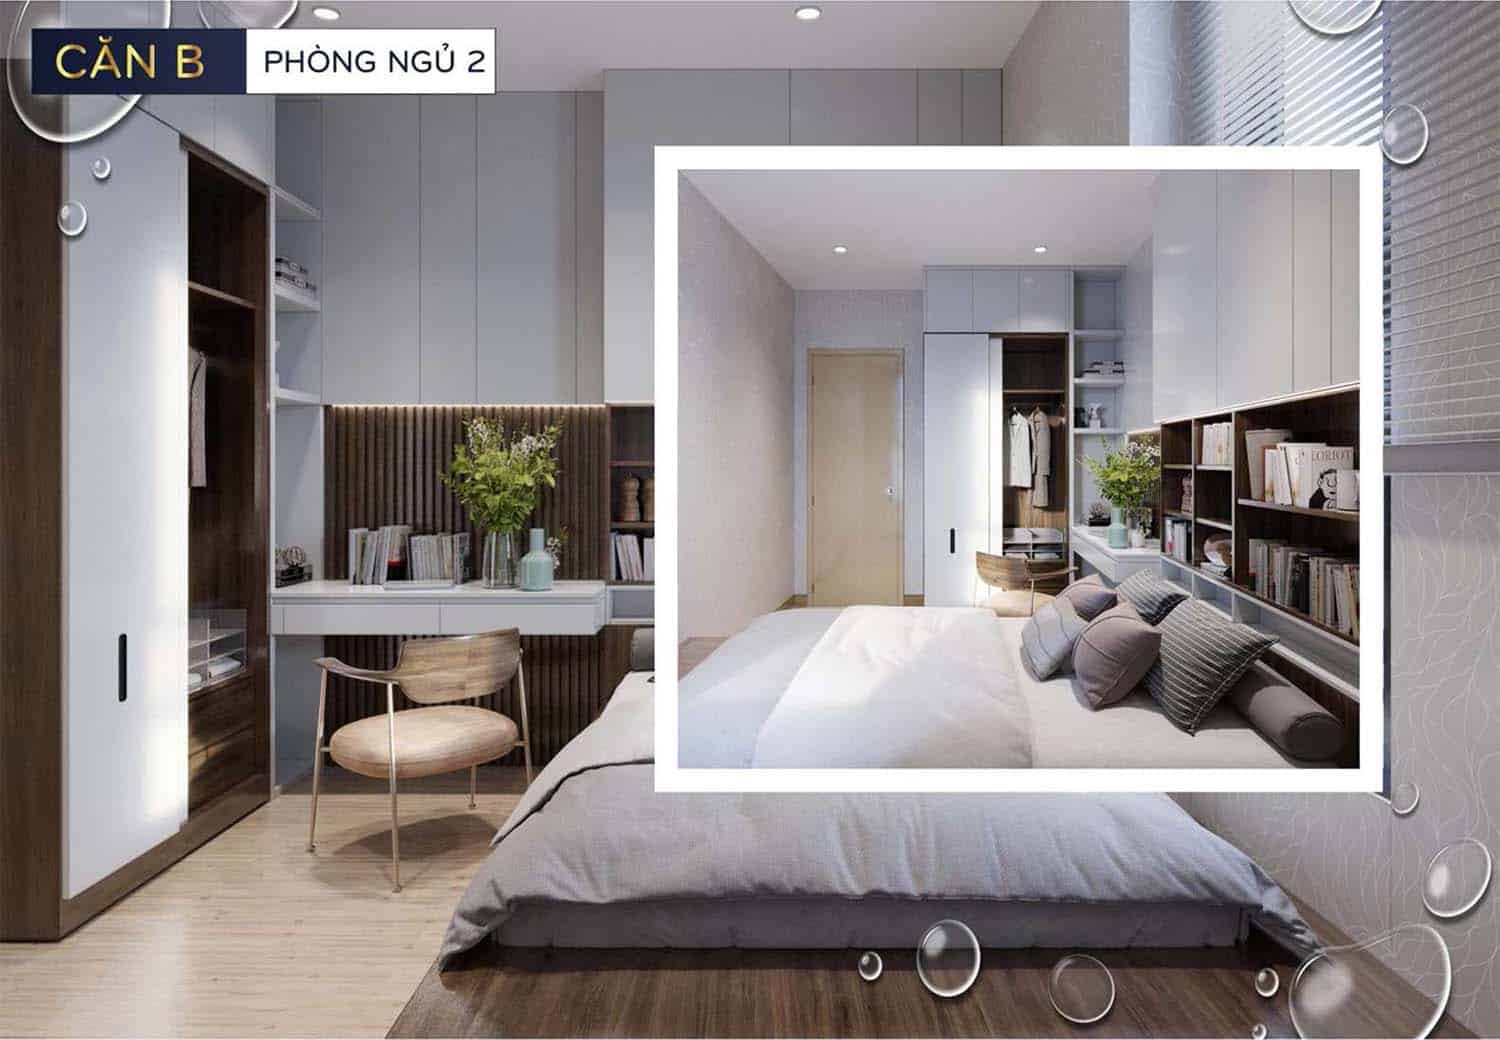 Hình ảnh thiết kế nhà mẫu Bcons Polaris căn B phòng ngủ 2